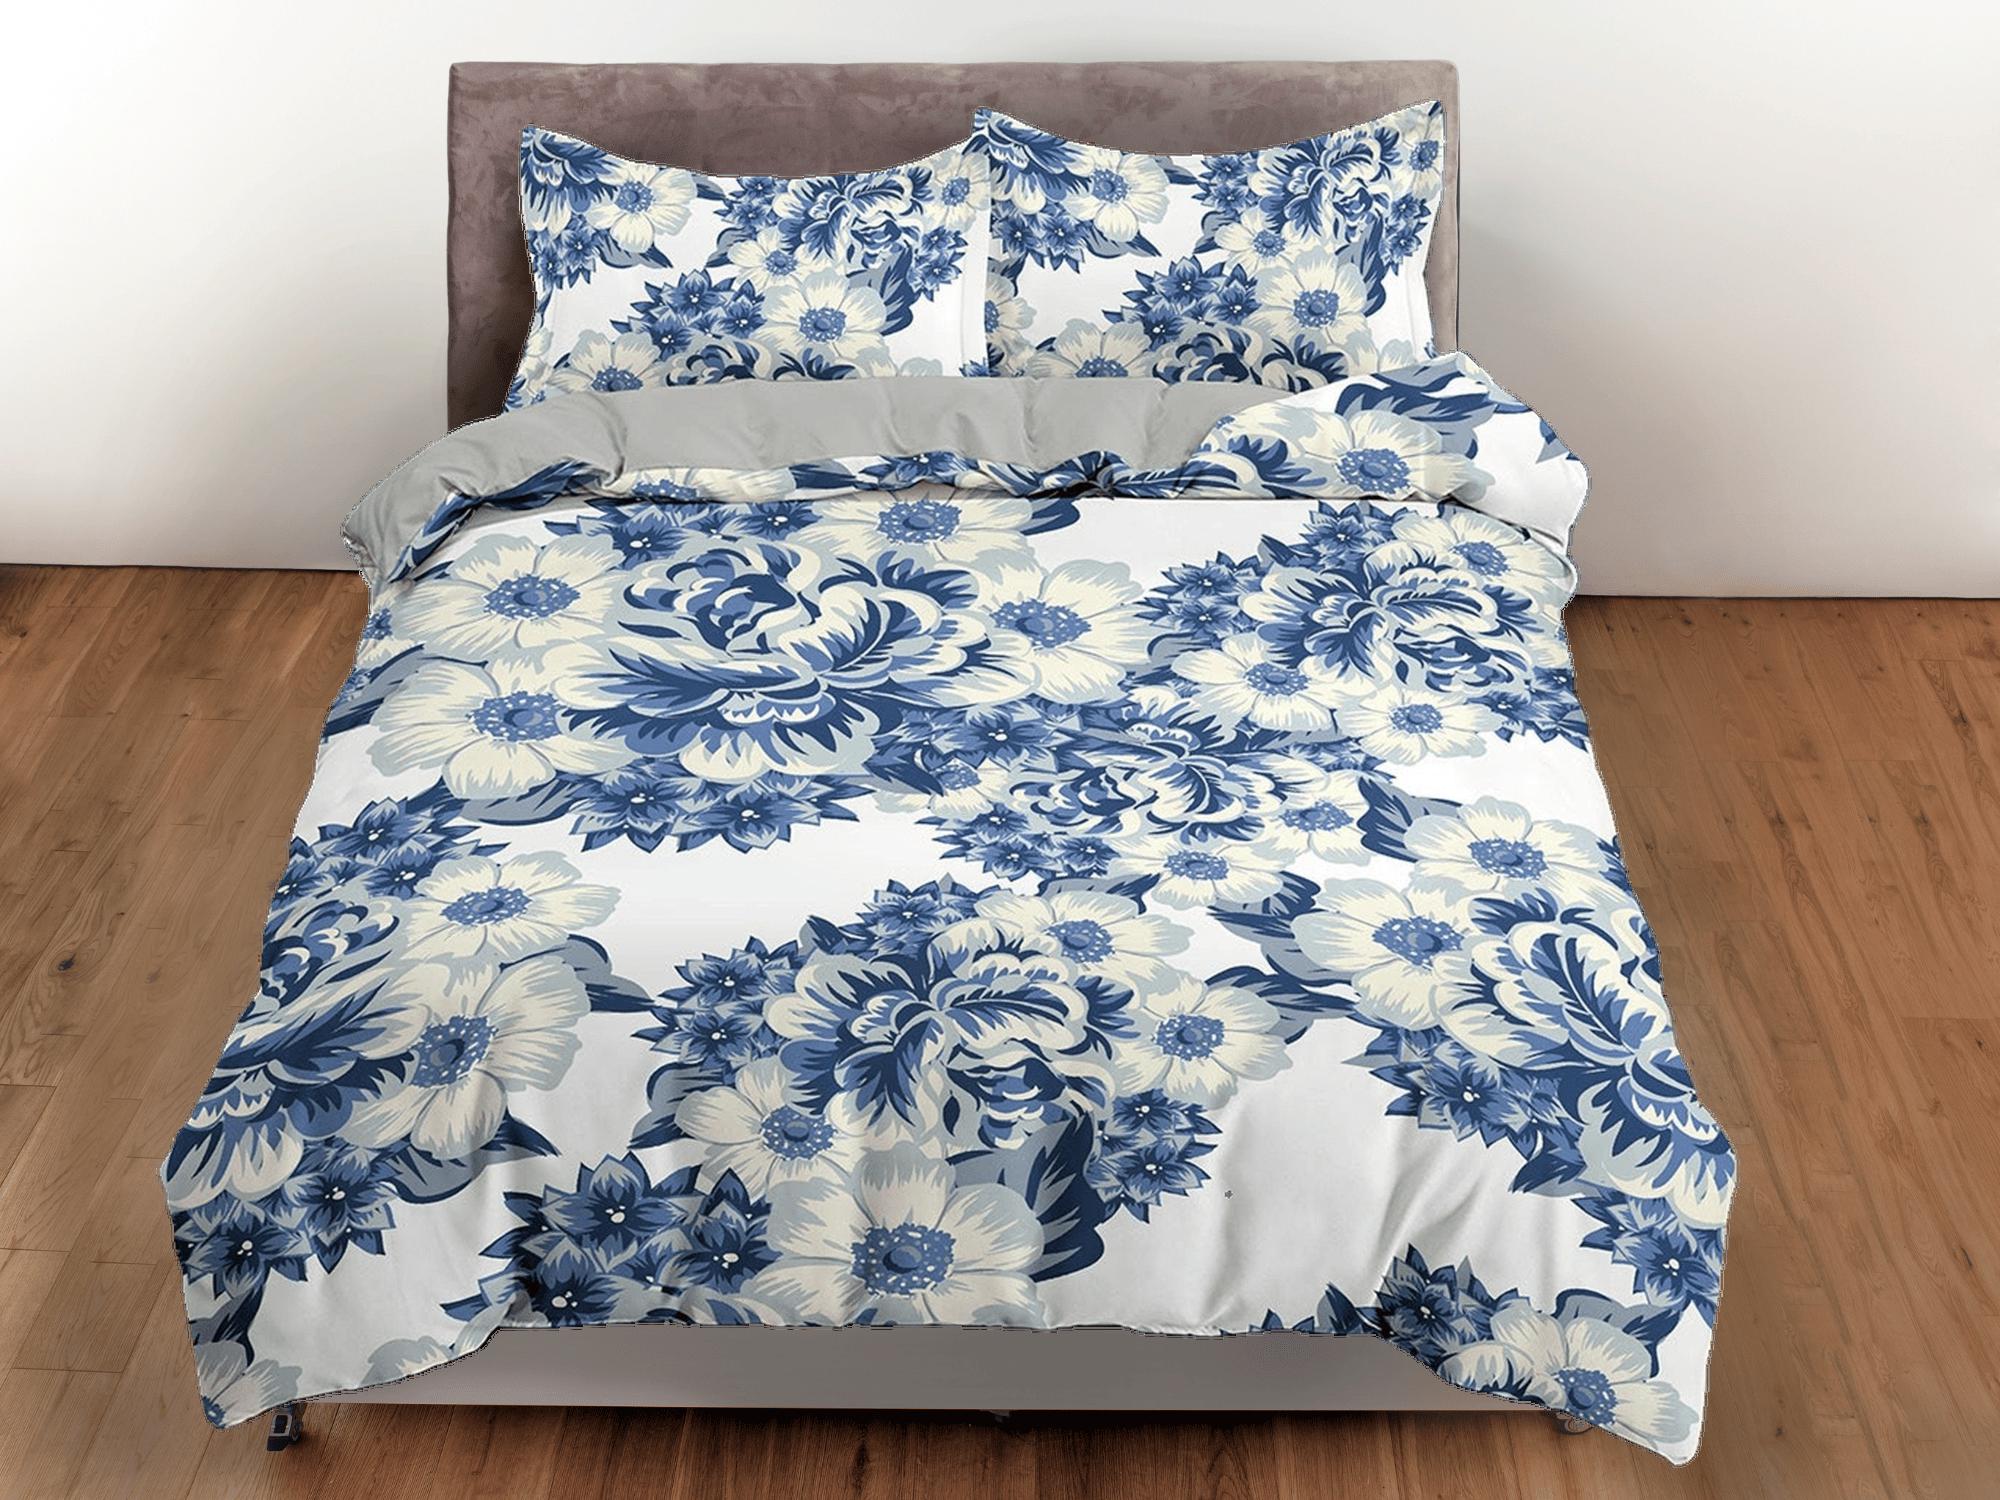 daintyduvet China blue porcelain inspired floral duvet cover queen, king, boho duvet, designer bedding, aesthetic bedding, maximalist full size bedding